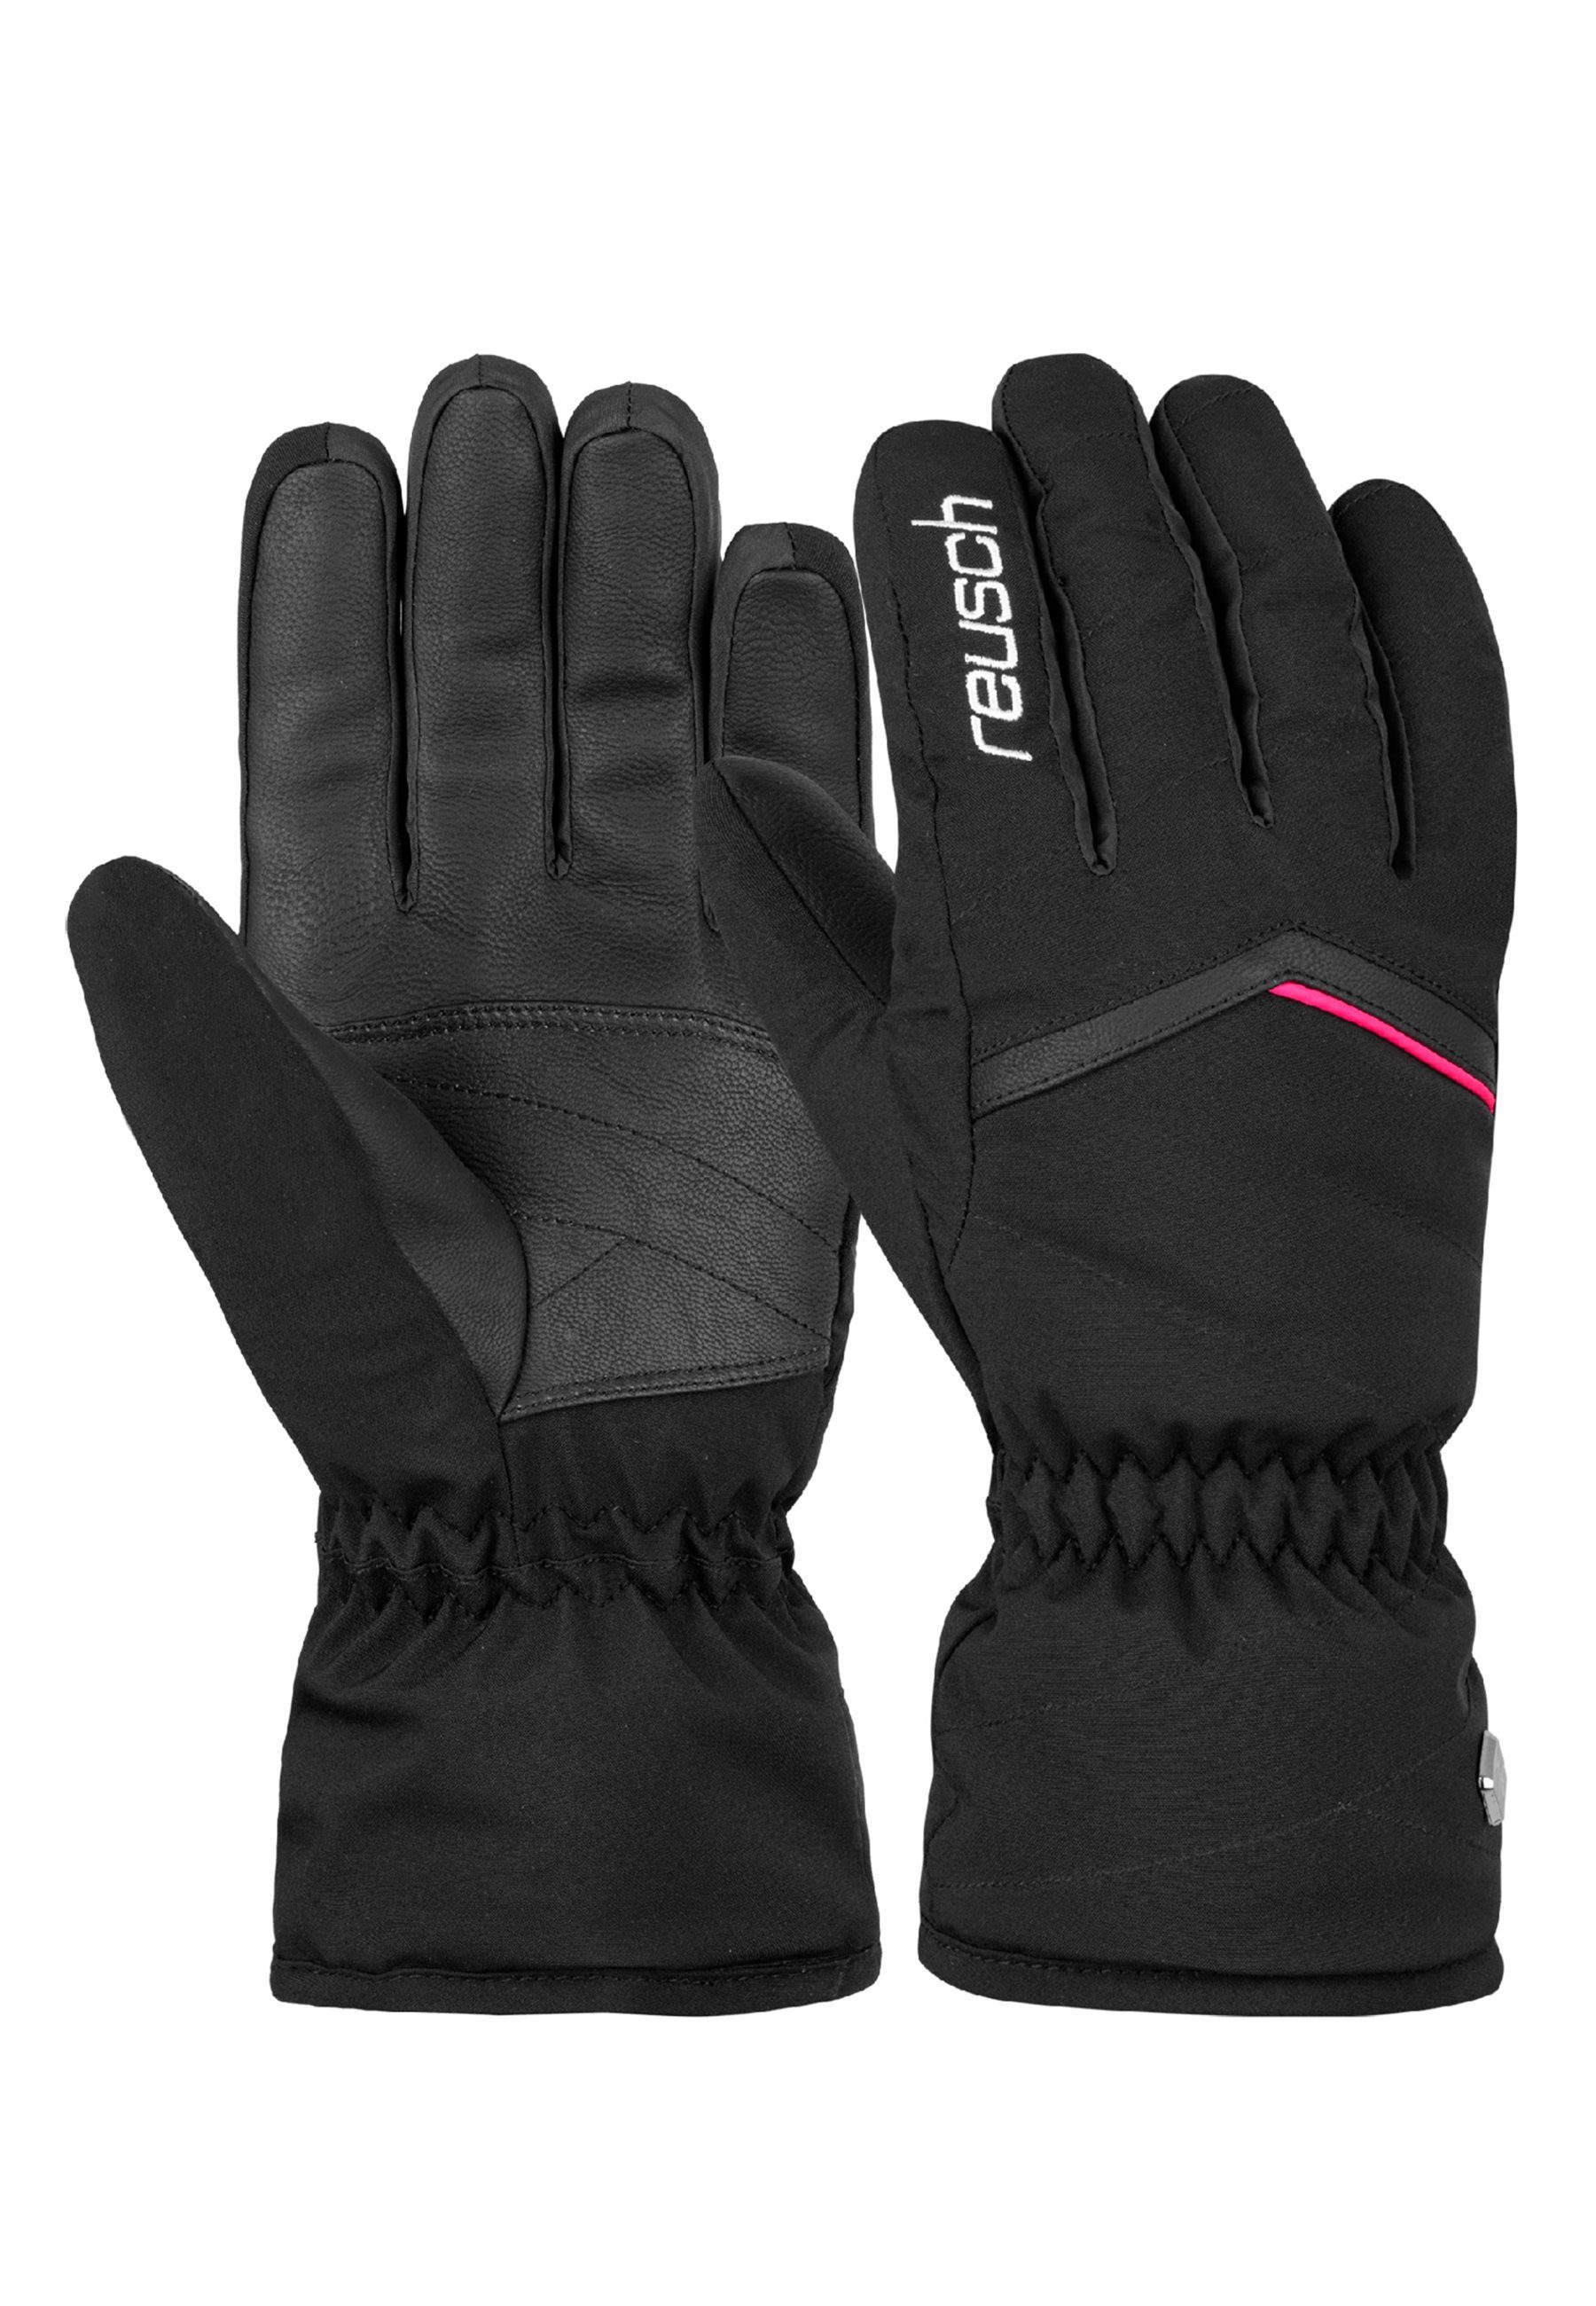 Reusch Skihandschuhe Marisa mit langer Stulpe pink-schwarz | Handschuhe